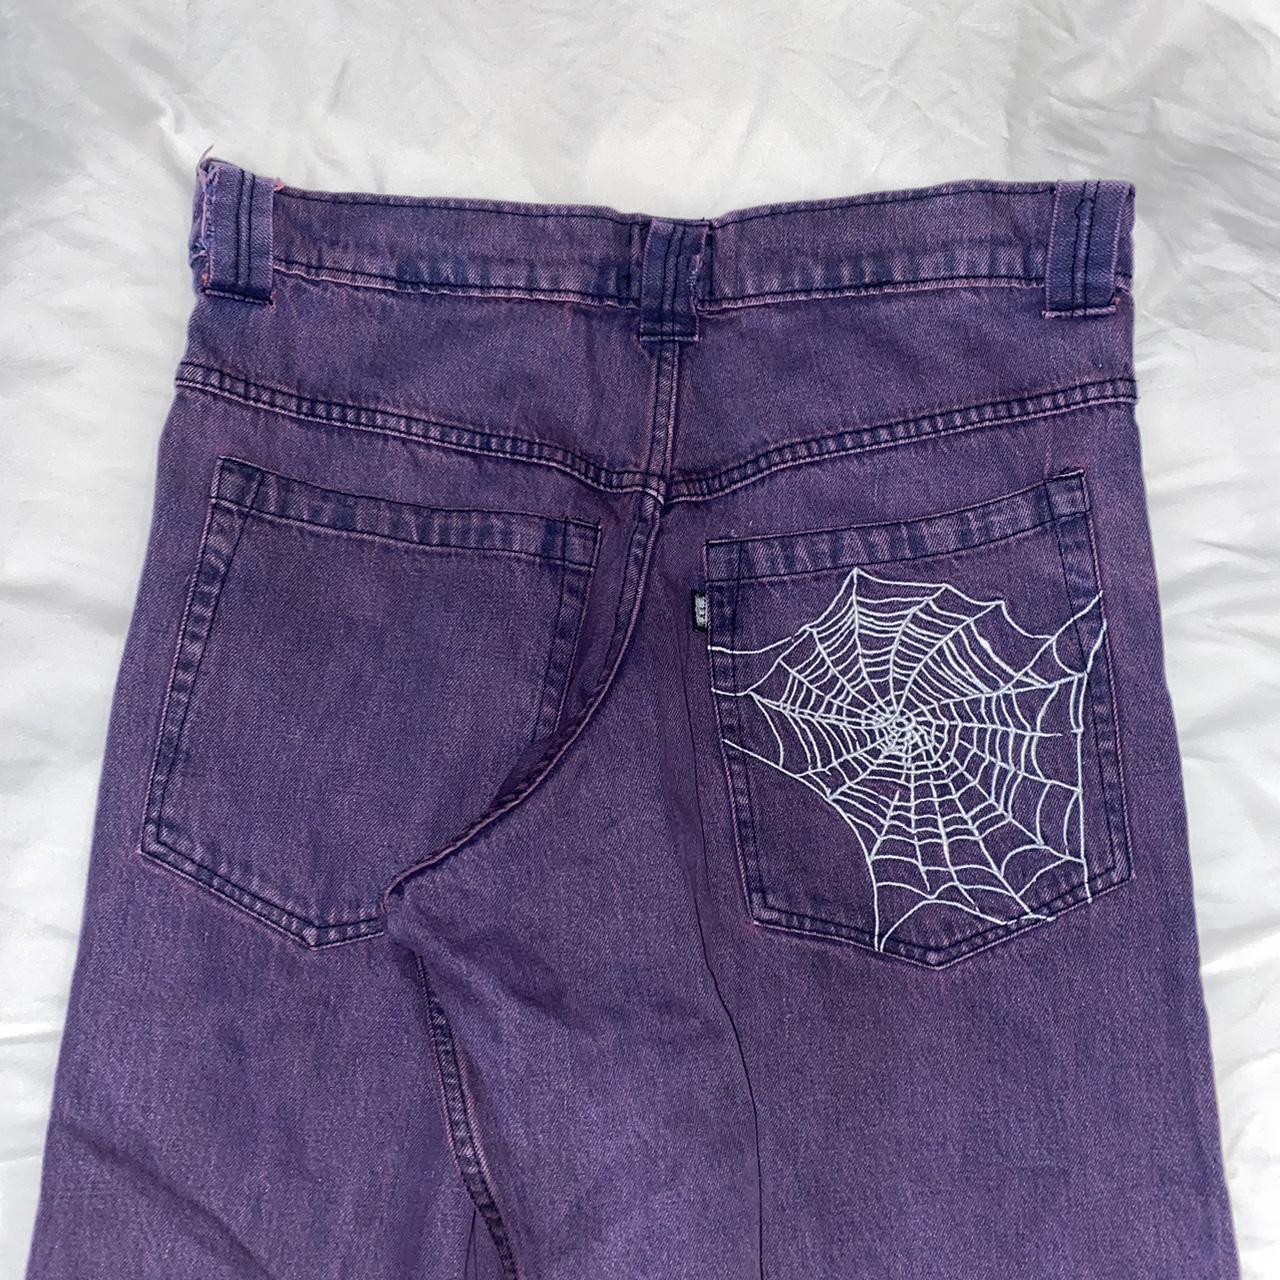 12,000円earl skateboards web jeans purple